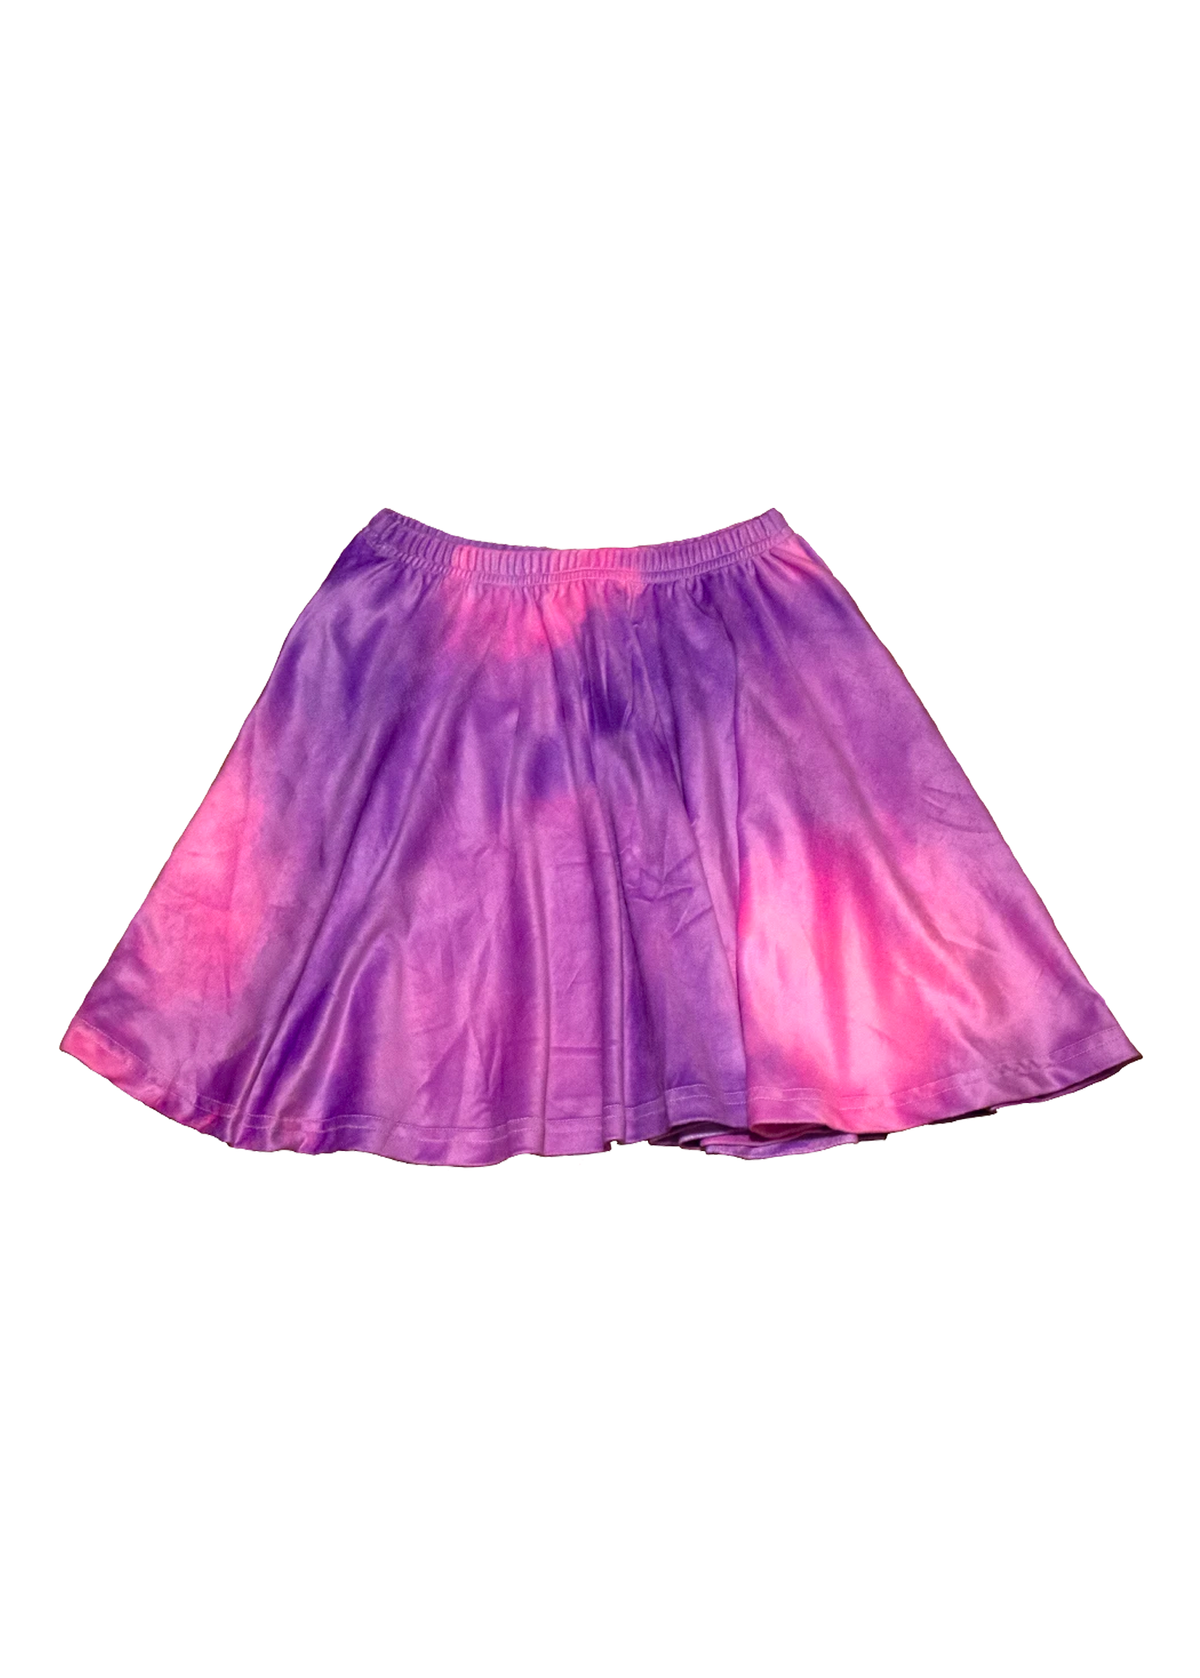 Velvet Tie Dye Skirt in Mood